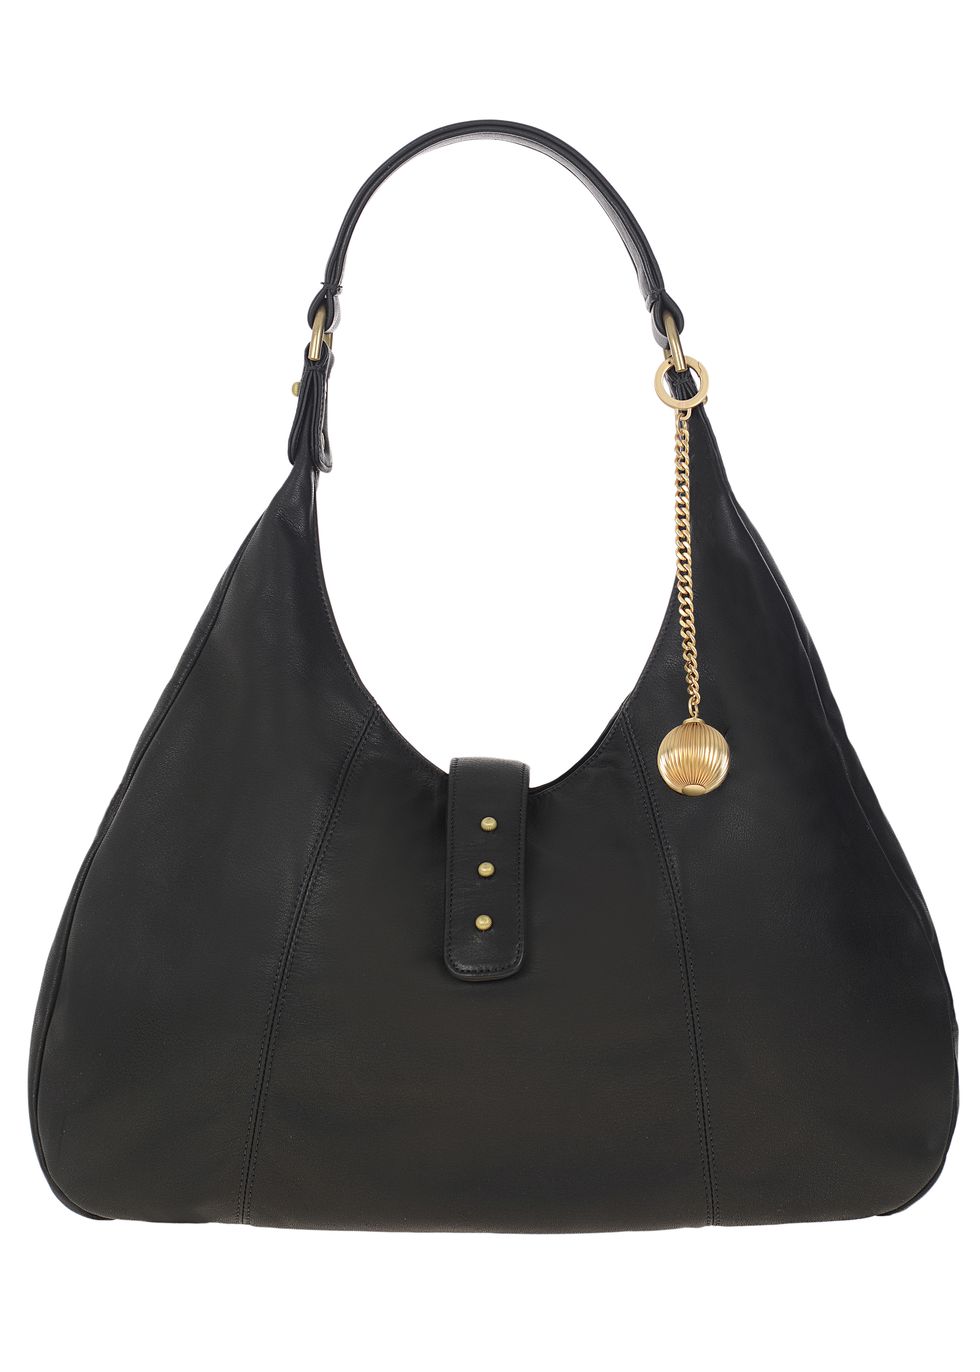 Handbag, Bag, Shoulder bag, Black, Hobo bag, Fashion accessory, Leather, Fashion, Material property, Font, 